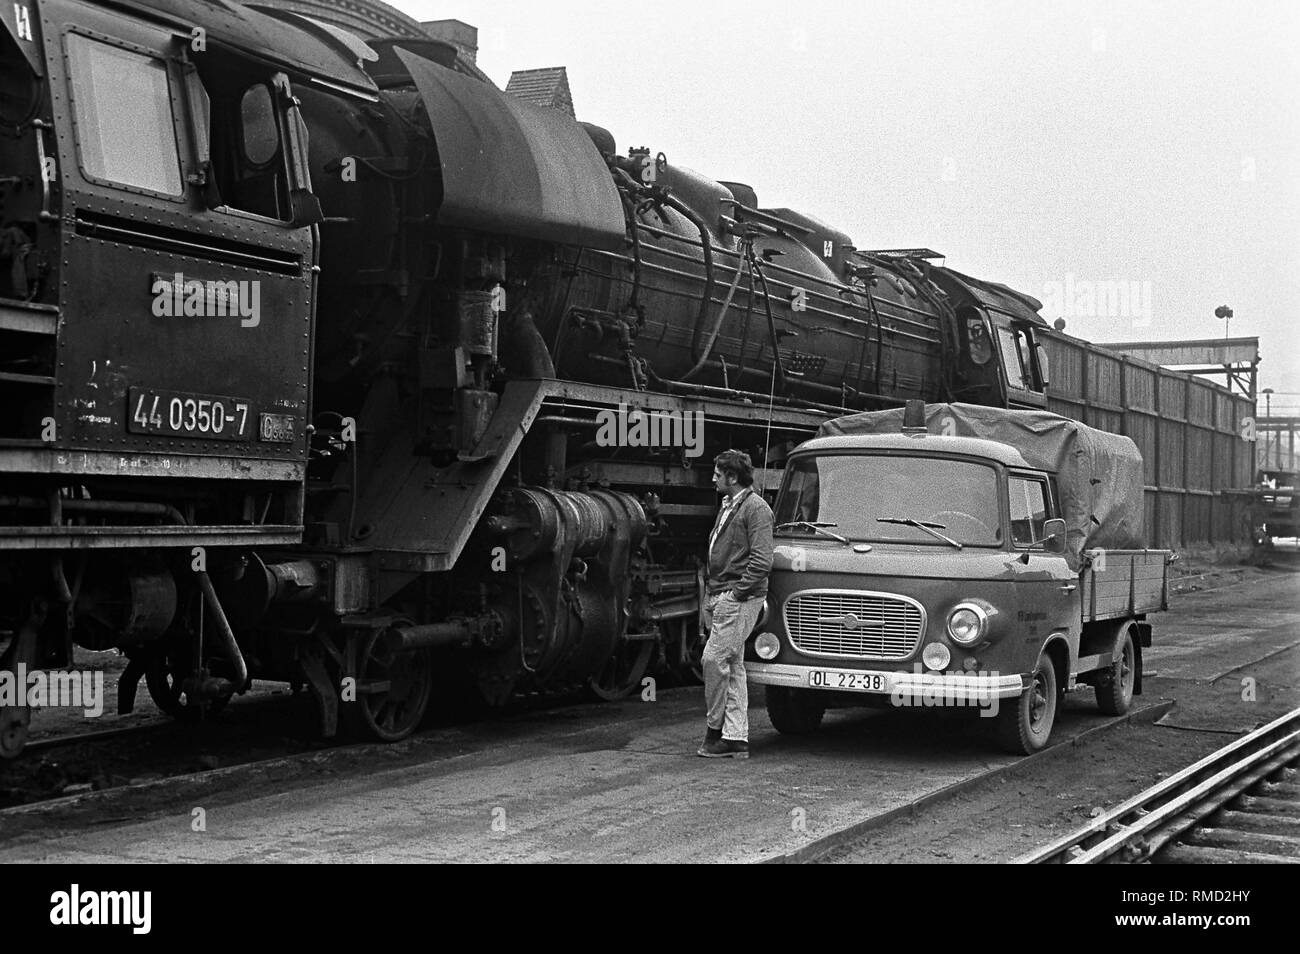 Un lavoratore si trova di fronte a una 'Barkas' pick-up nella parte anteriore di una locomotiva in materie (Reichsbahn-Ausbesserungswerk) (Reichsbahn repair shop). Foto Stock